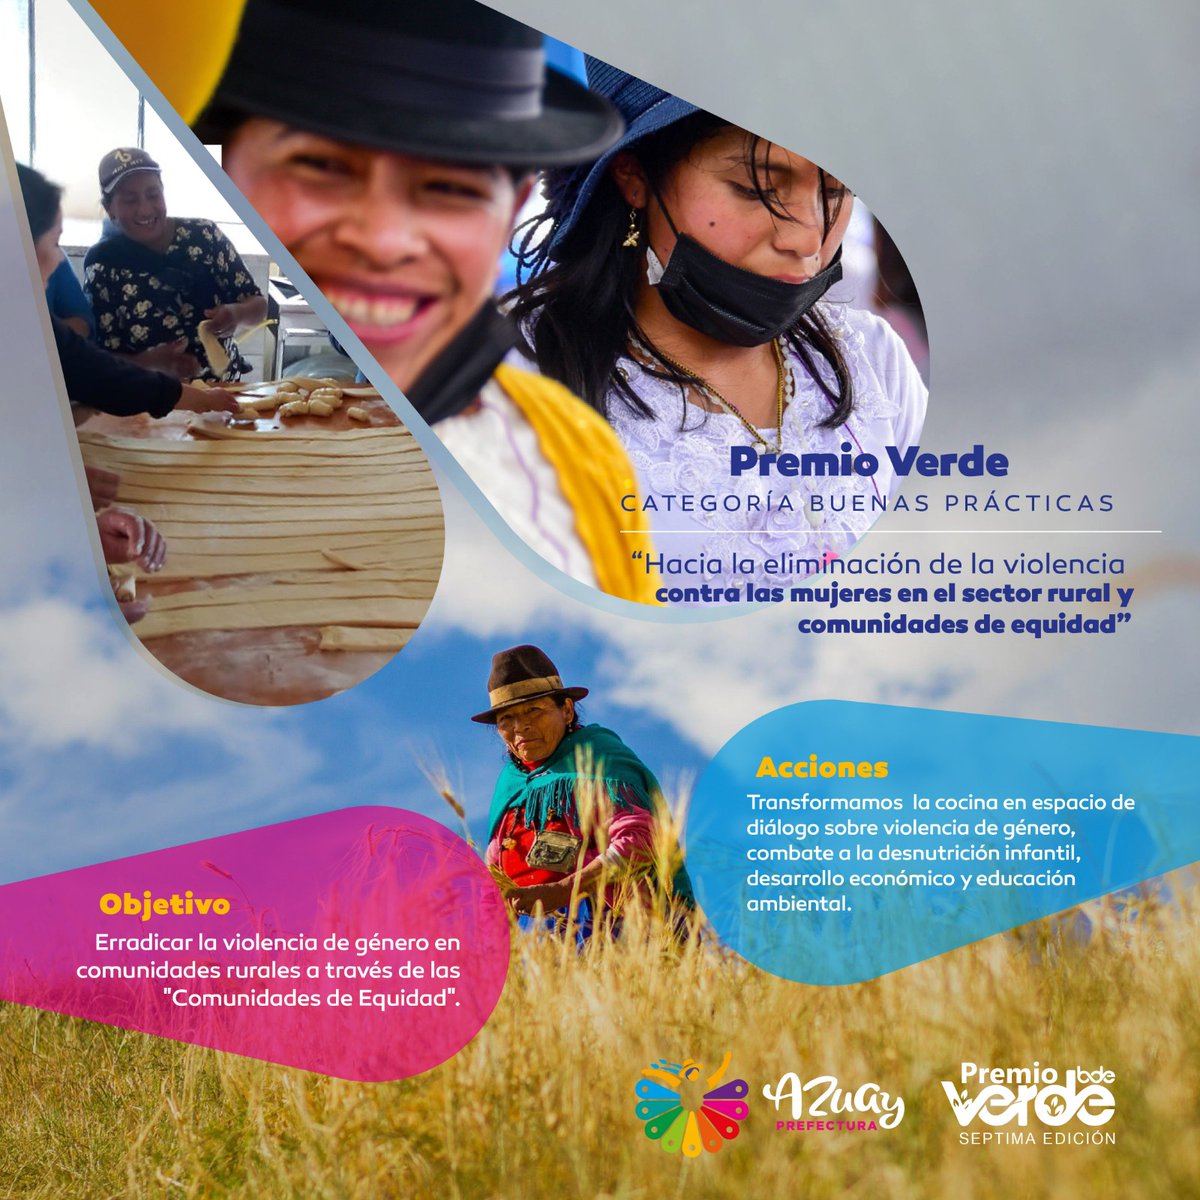 #PremioVerde 🙌 ✅Estamos concursando en la categoría Buenas Prácticas con nuestro proyecto 'Hacia la eliminación de la violencia contra las mujeres en el sector rural y comunidades de equidad'. 👩‍🌾👵🏻👩🏼‍🦱👧🏻 #JotaPrefecto #AzuayBicentenario #AzuayPrefectura